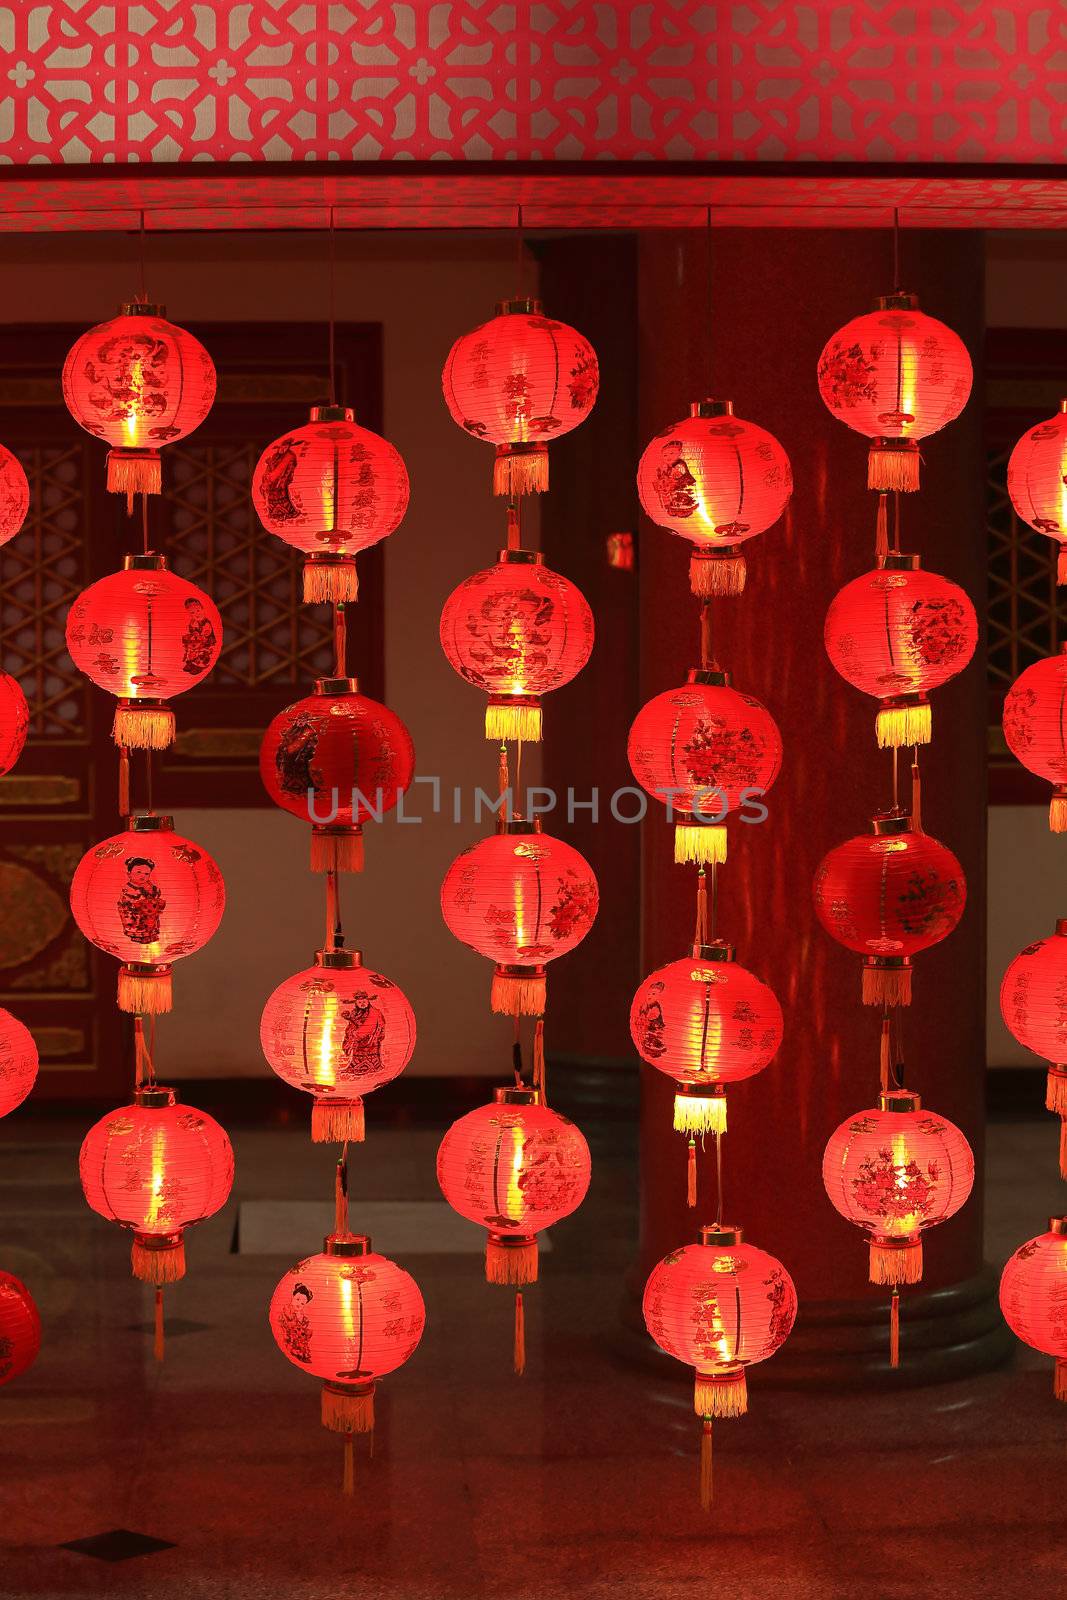 Big red lanterns